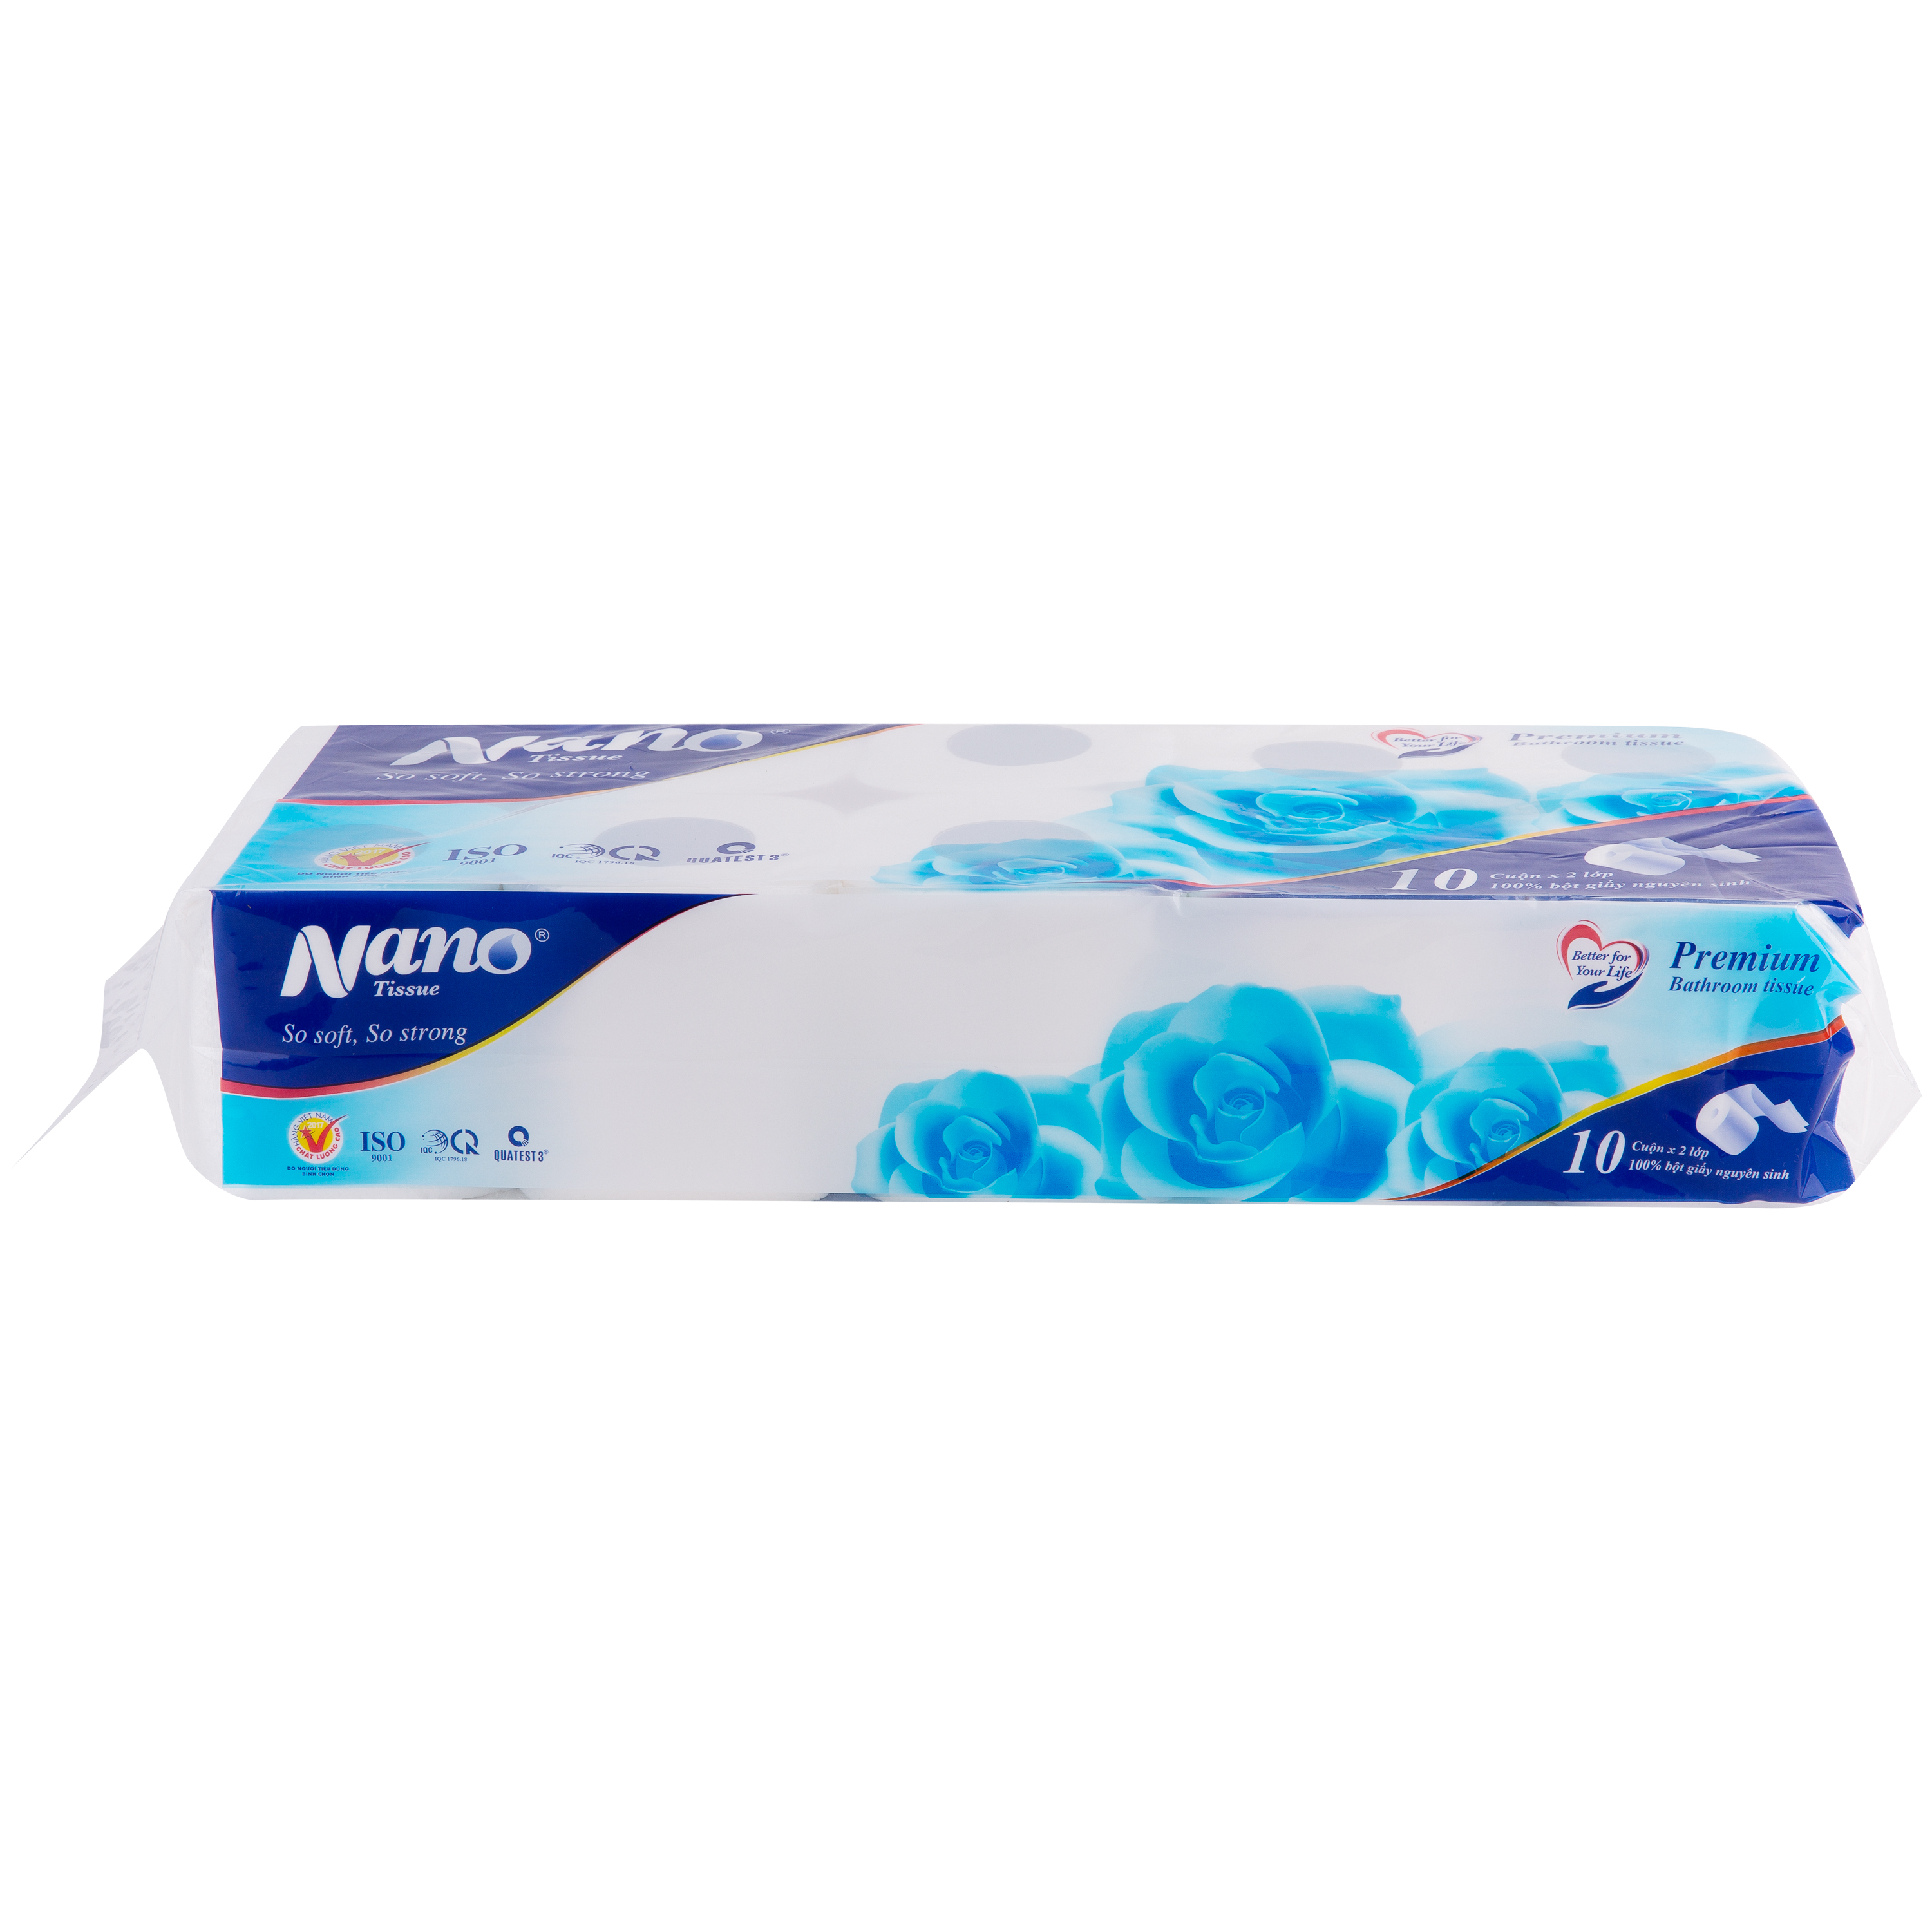 Giấy vệ sinh Blue 10 cuộn có lõi, thương hiệu Nano giấy 2 lớp an toàn cho người dùng